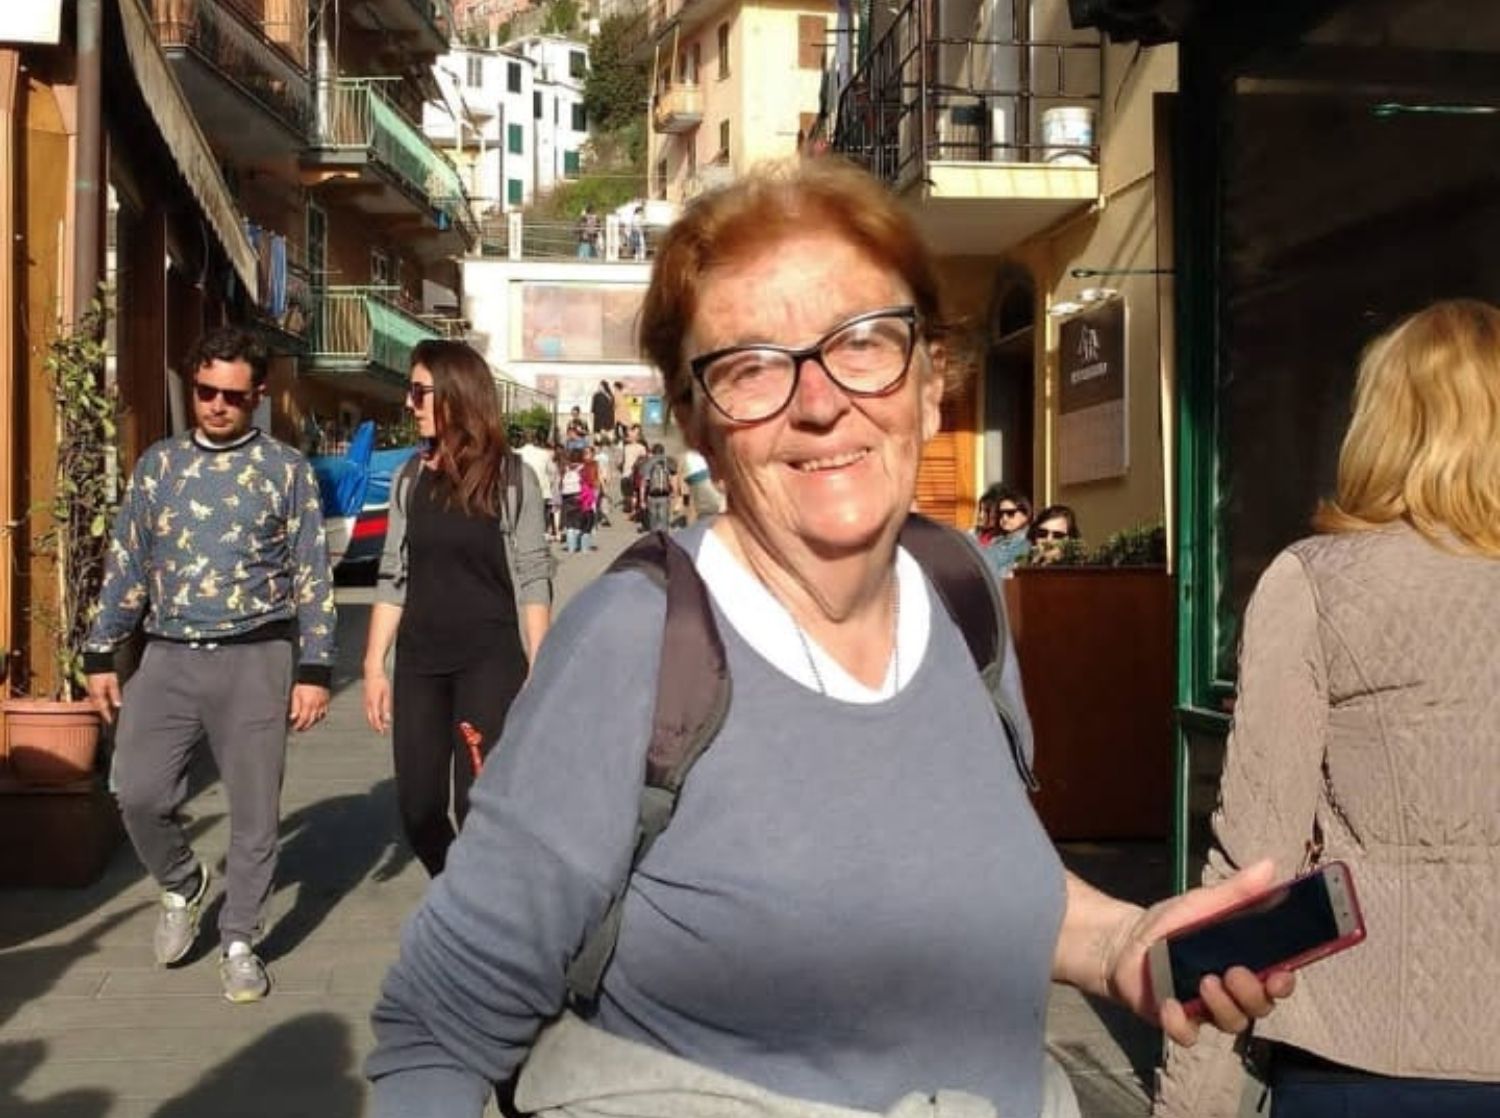 Elva, la abuela viajera que ha recorrido Europa con 84 años: "Nunca se es mayor para cumplir sueños". Foto: Instagram